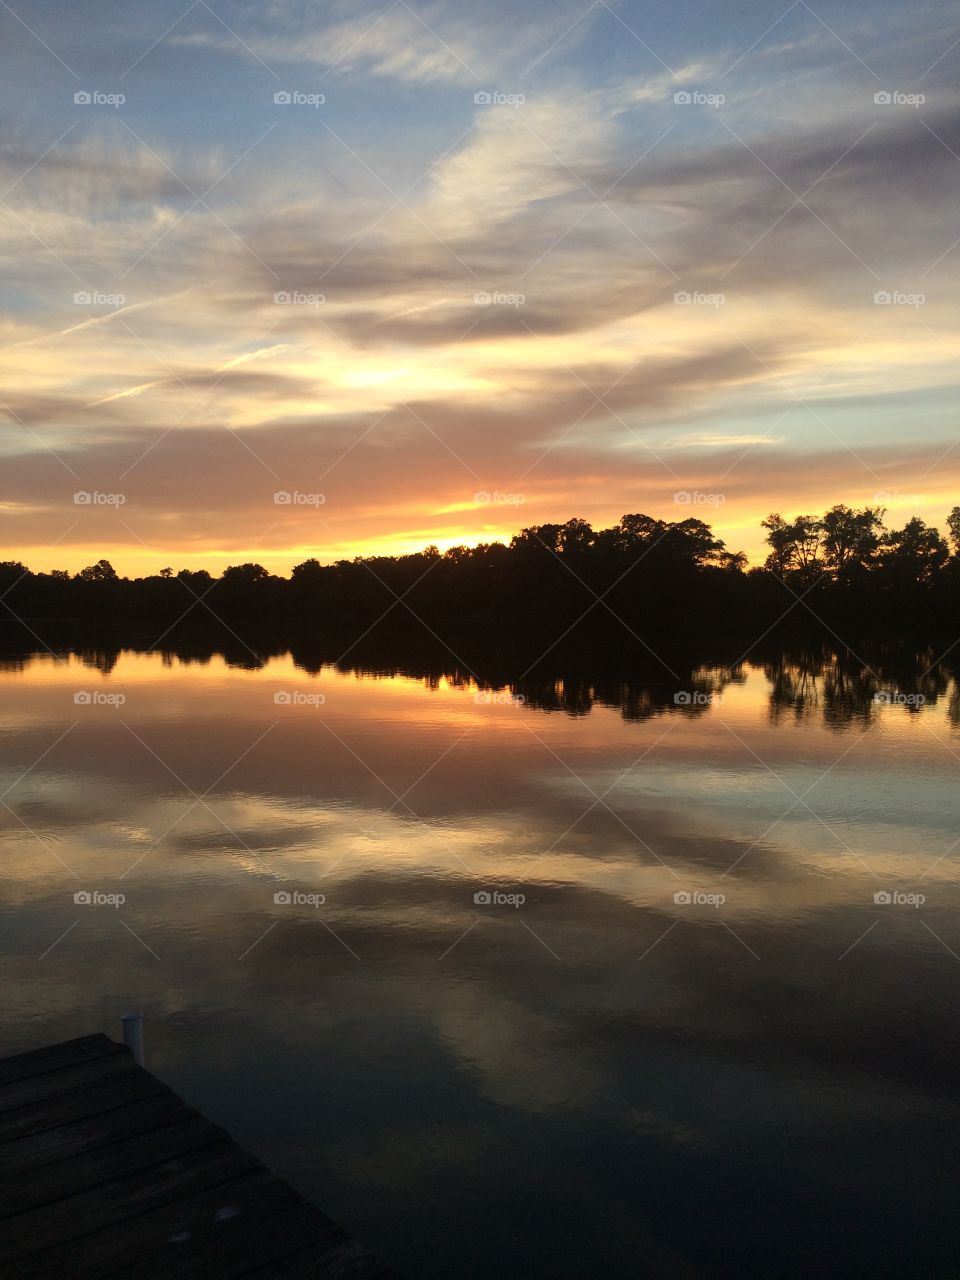 Lake view sunset 